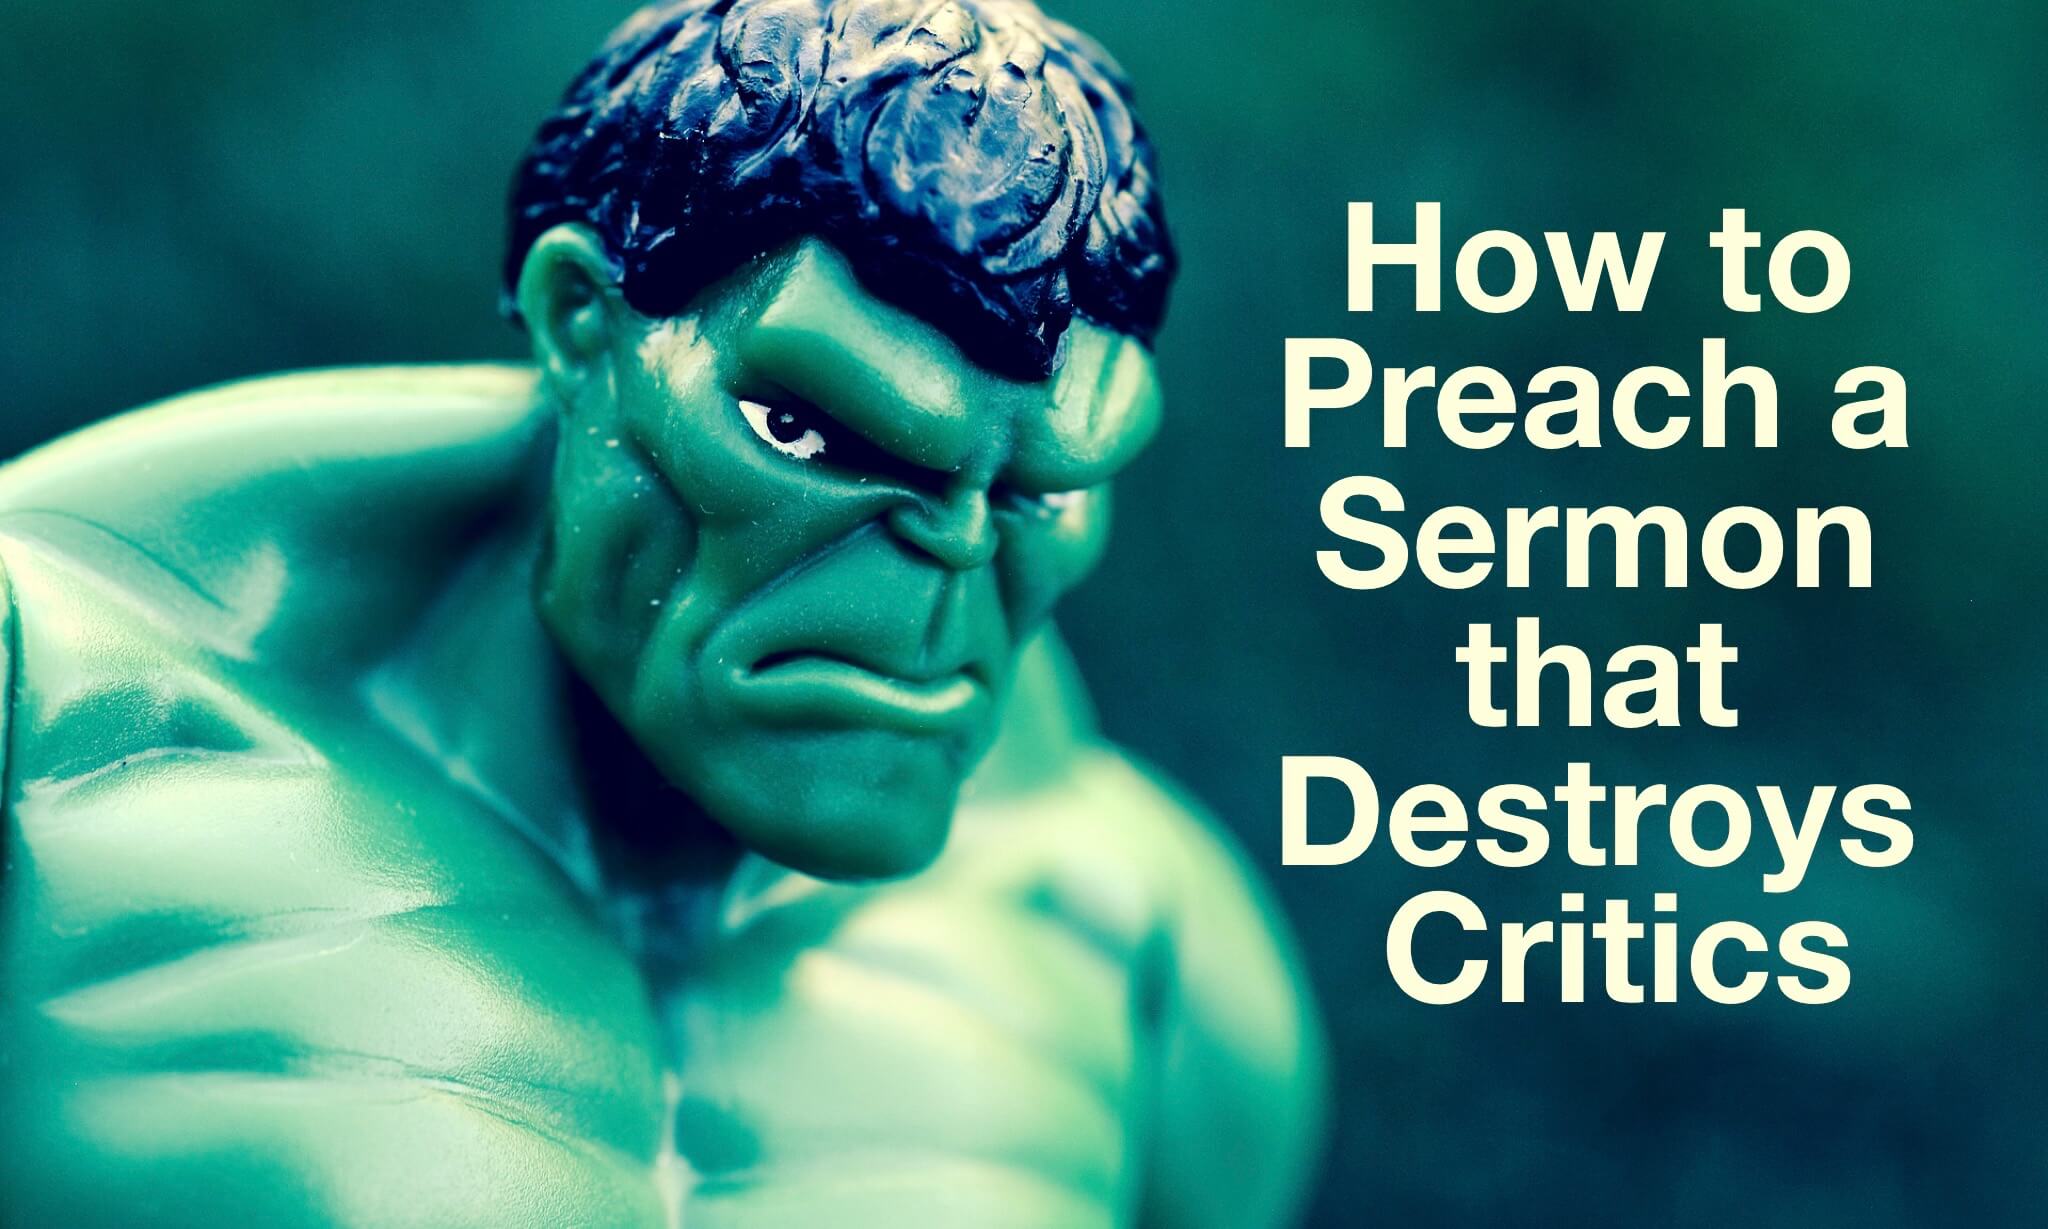 How to preach a sermon that destroys critics